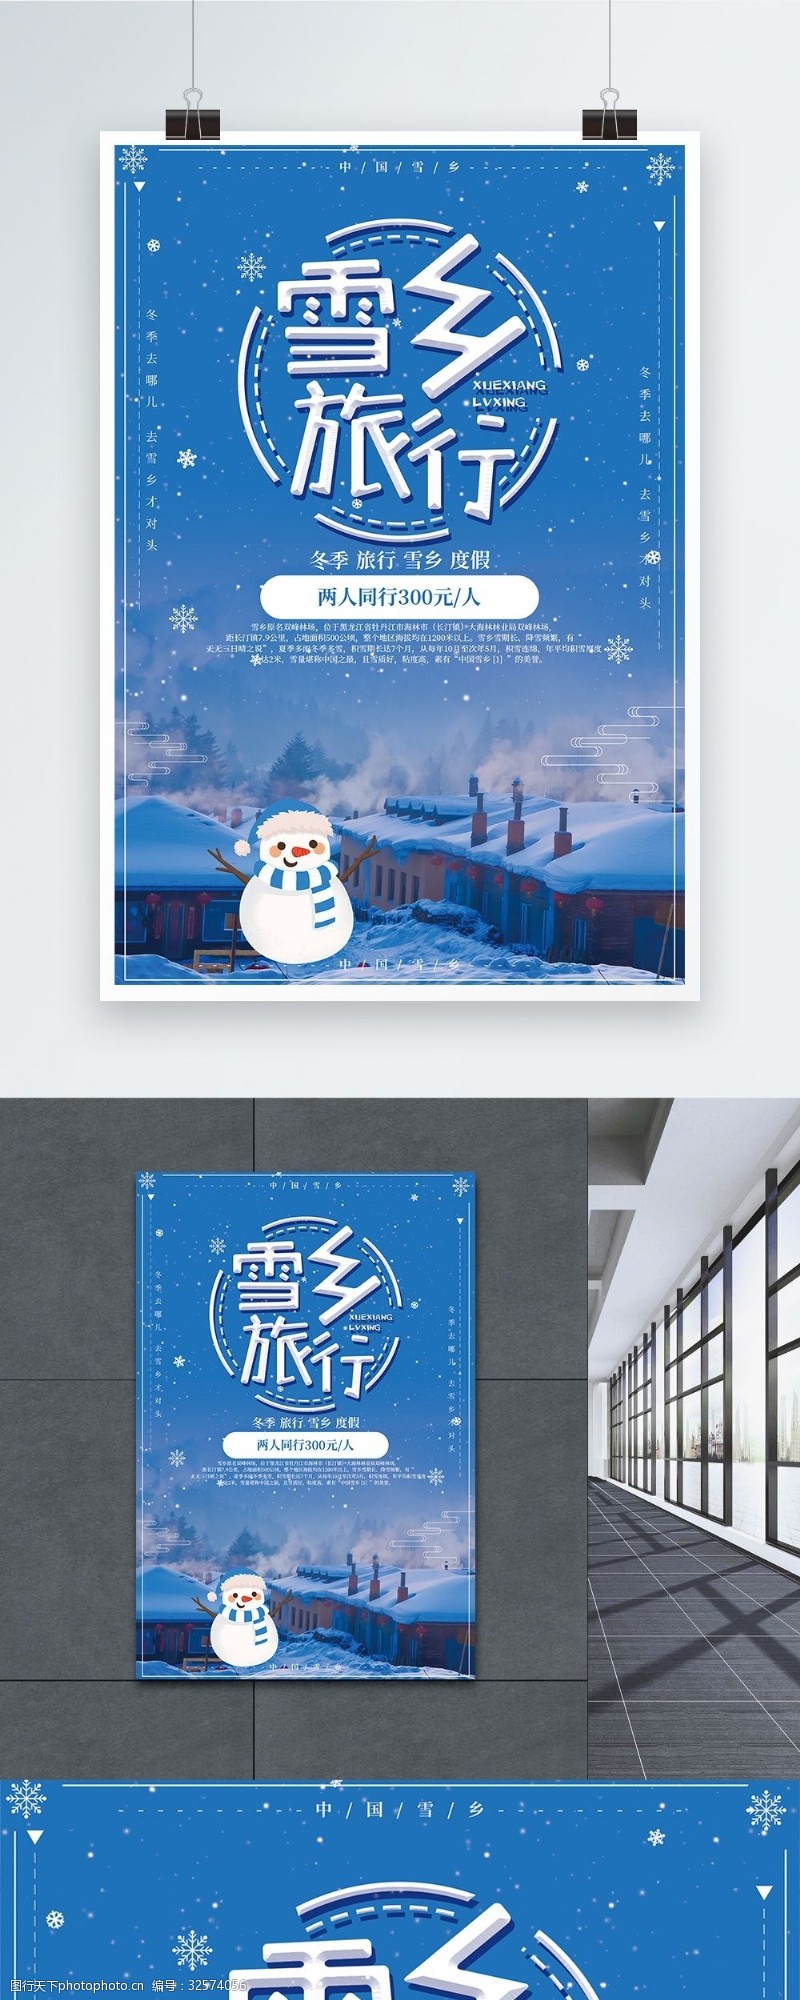 童话深蓝色雪乡浪漫旅行海报设计